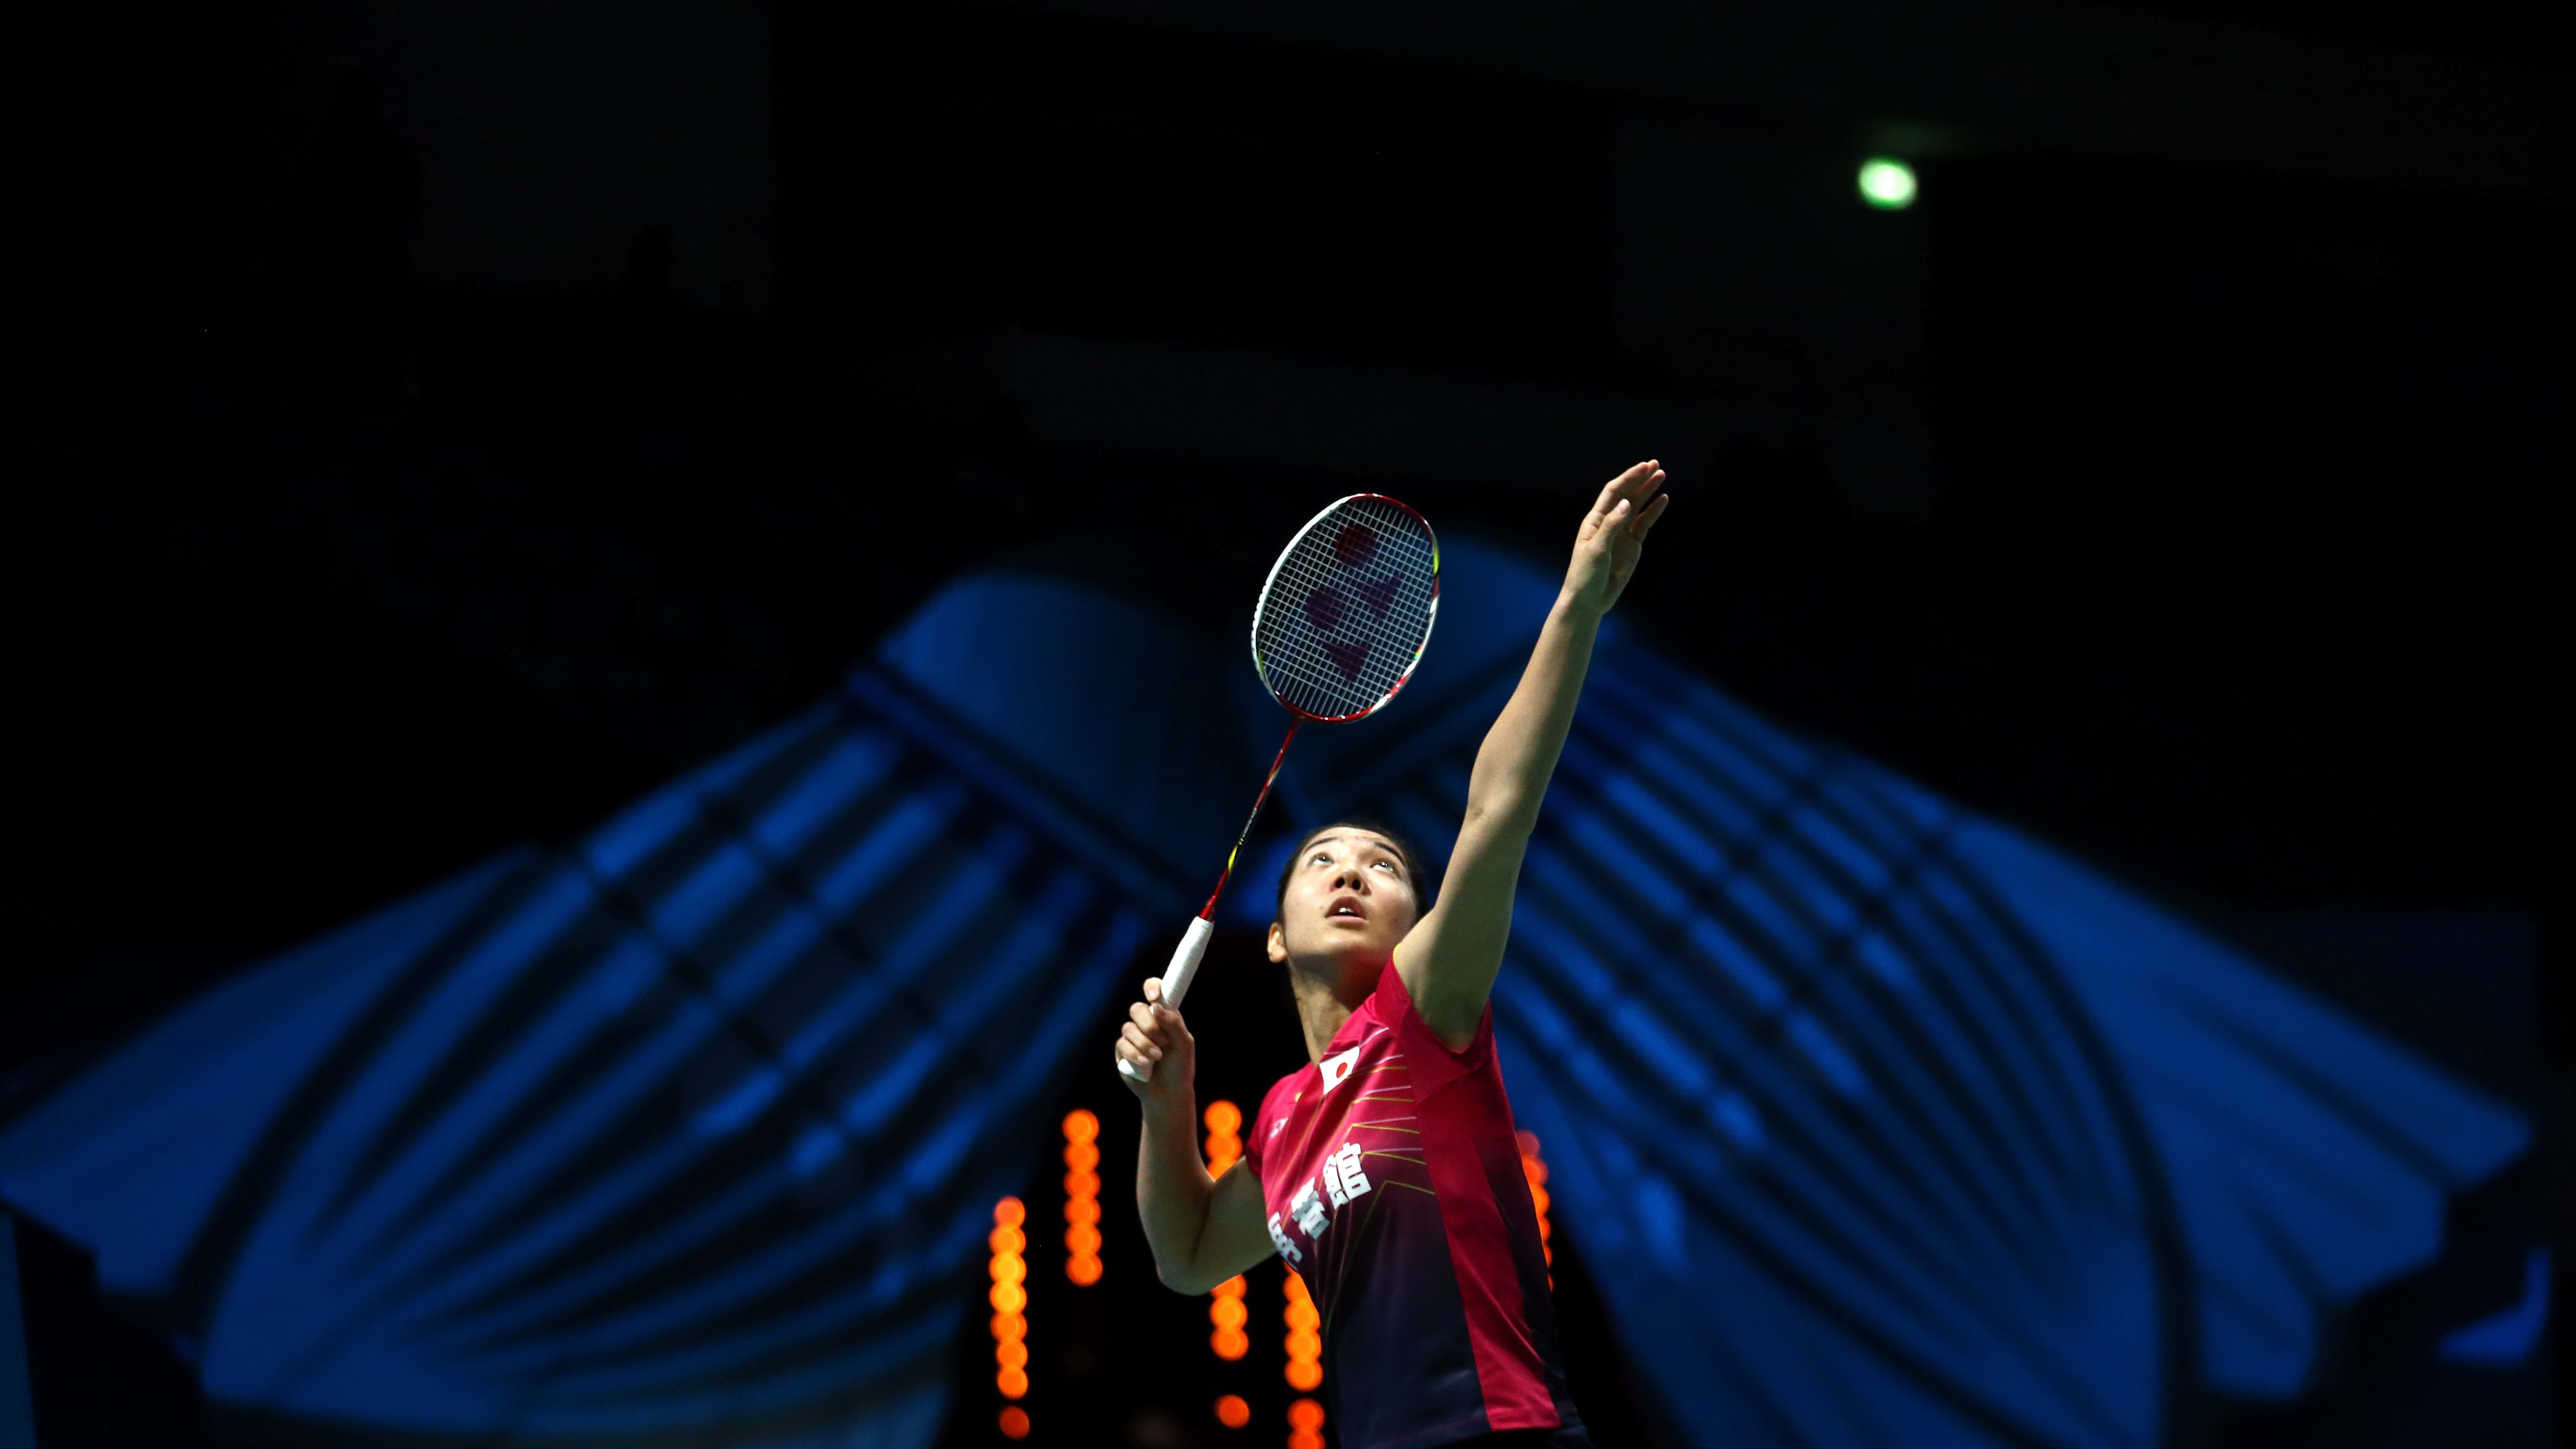 German Open 2023 badminton How to watch Loh Kean Yew live in action in Mülheim